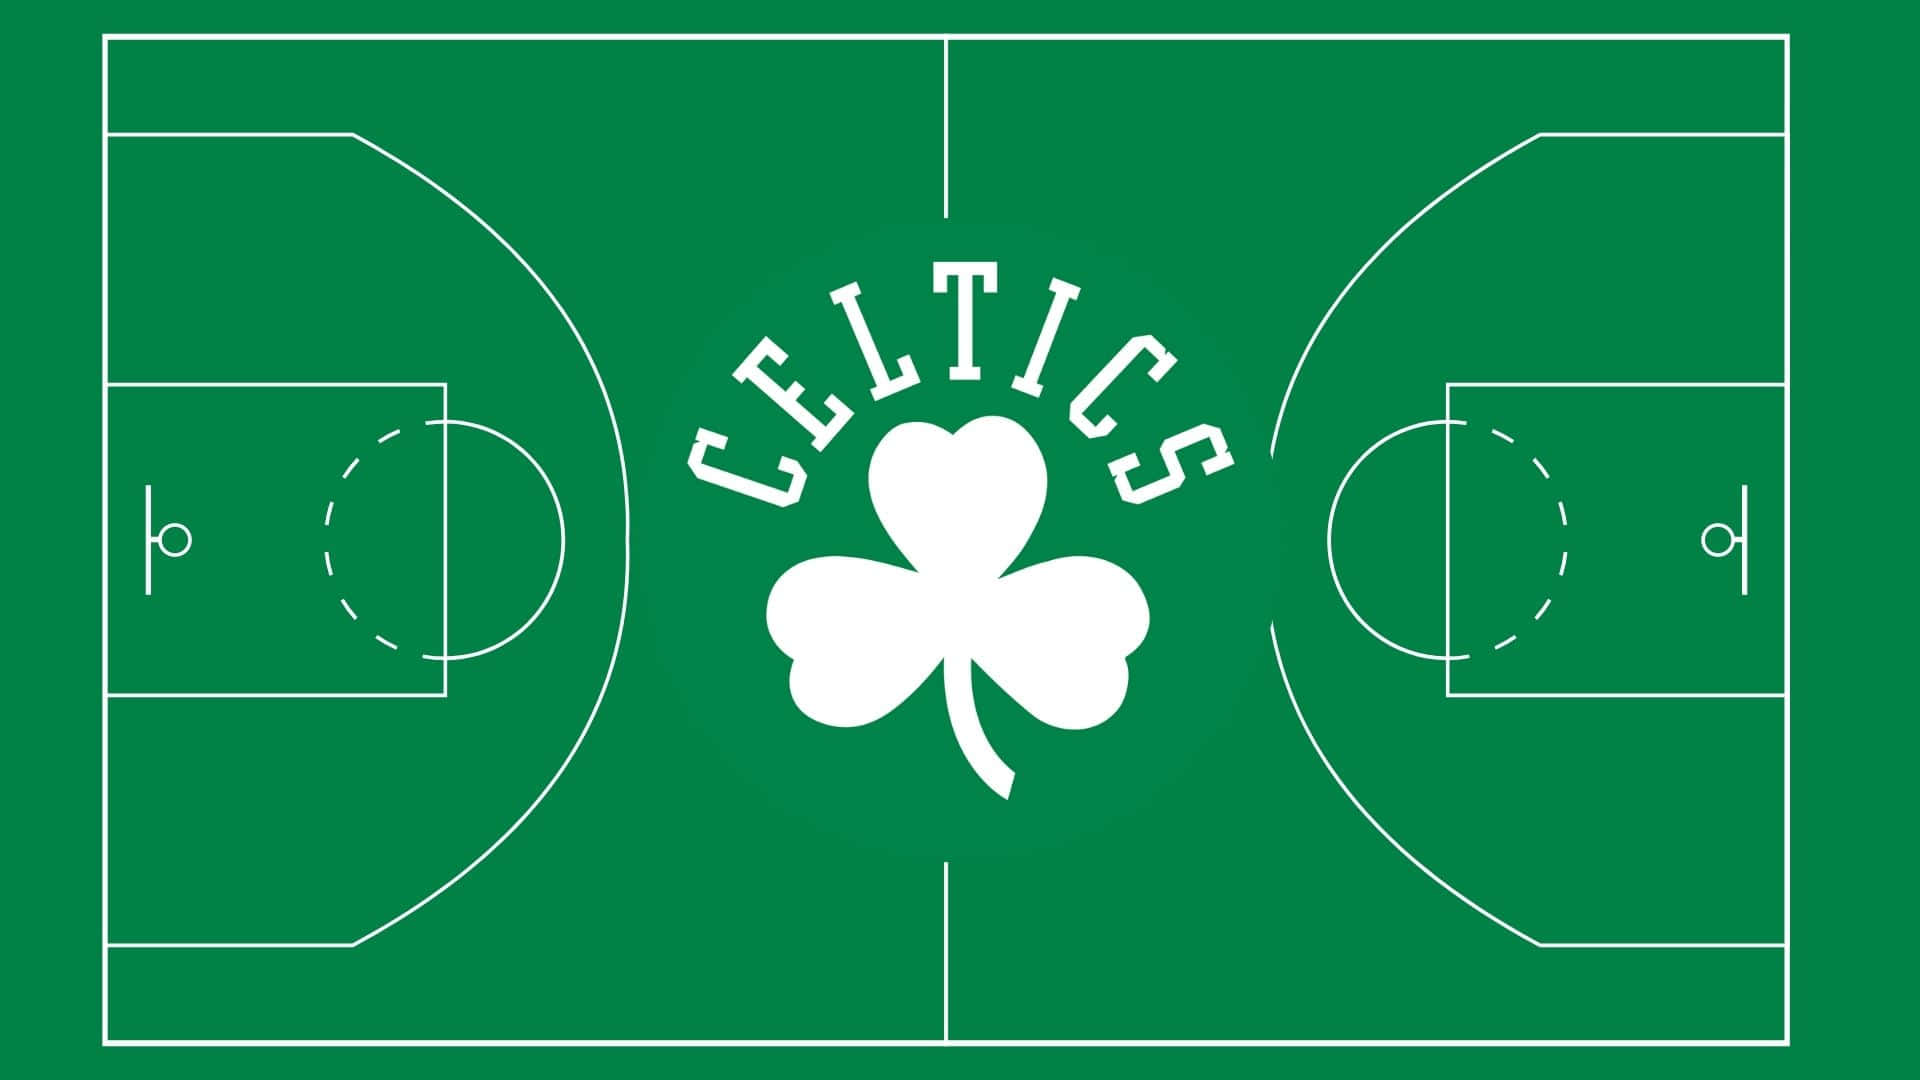 Losboston Celtics Se Unifican Como Uno Solo Para Conquistar Su Próxima Victoria. Fondo de pantalla